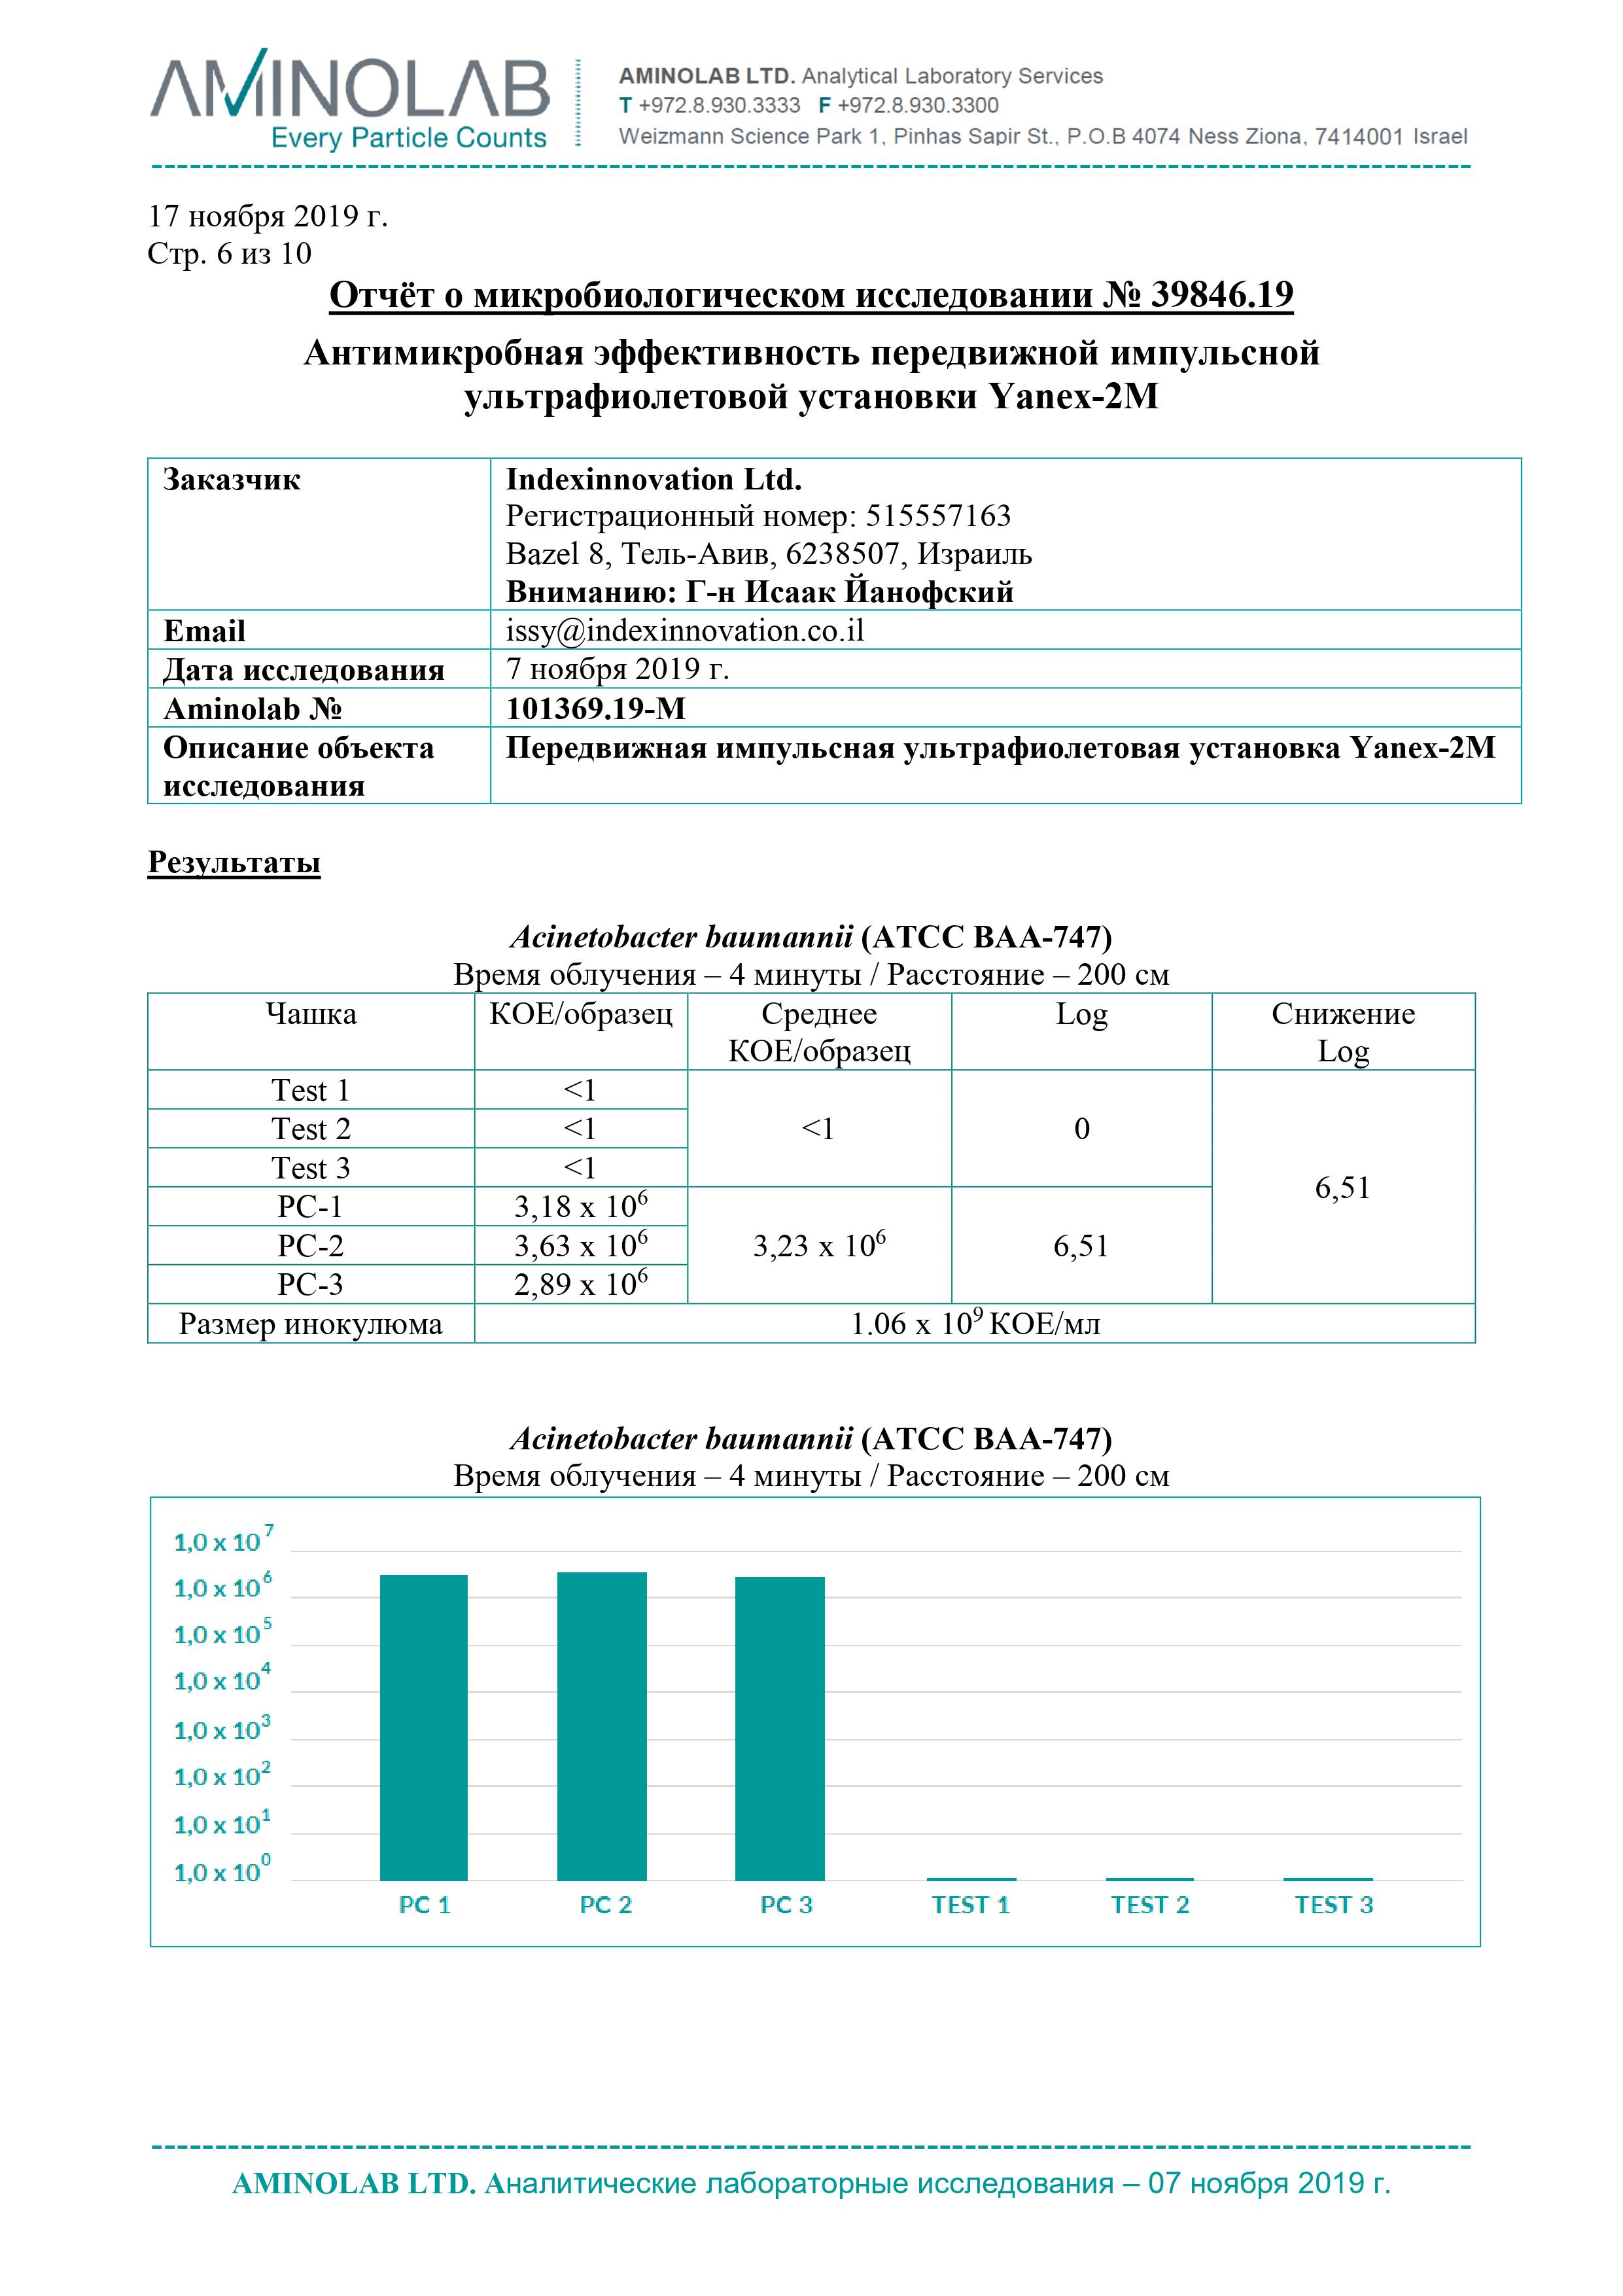 Отчёт об антимикробной эффективности передвижной импульсной ультрафиолетовой установки "Yanex-2M"